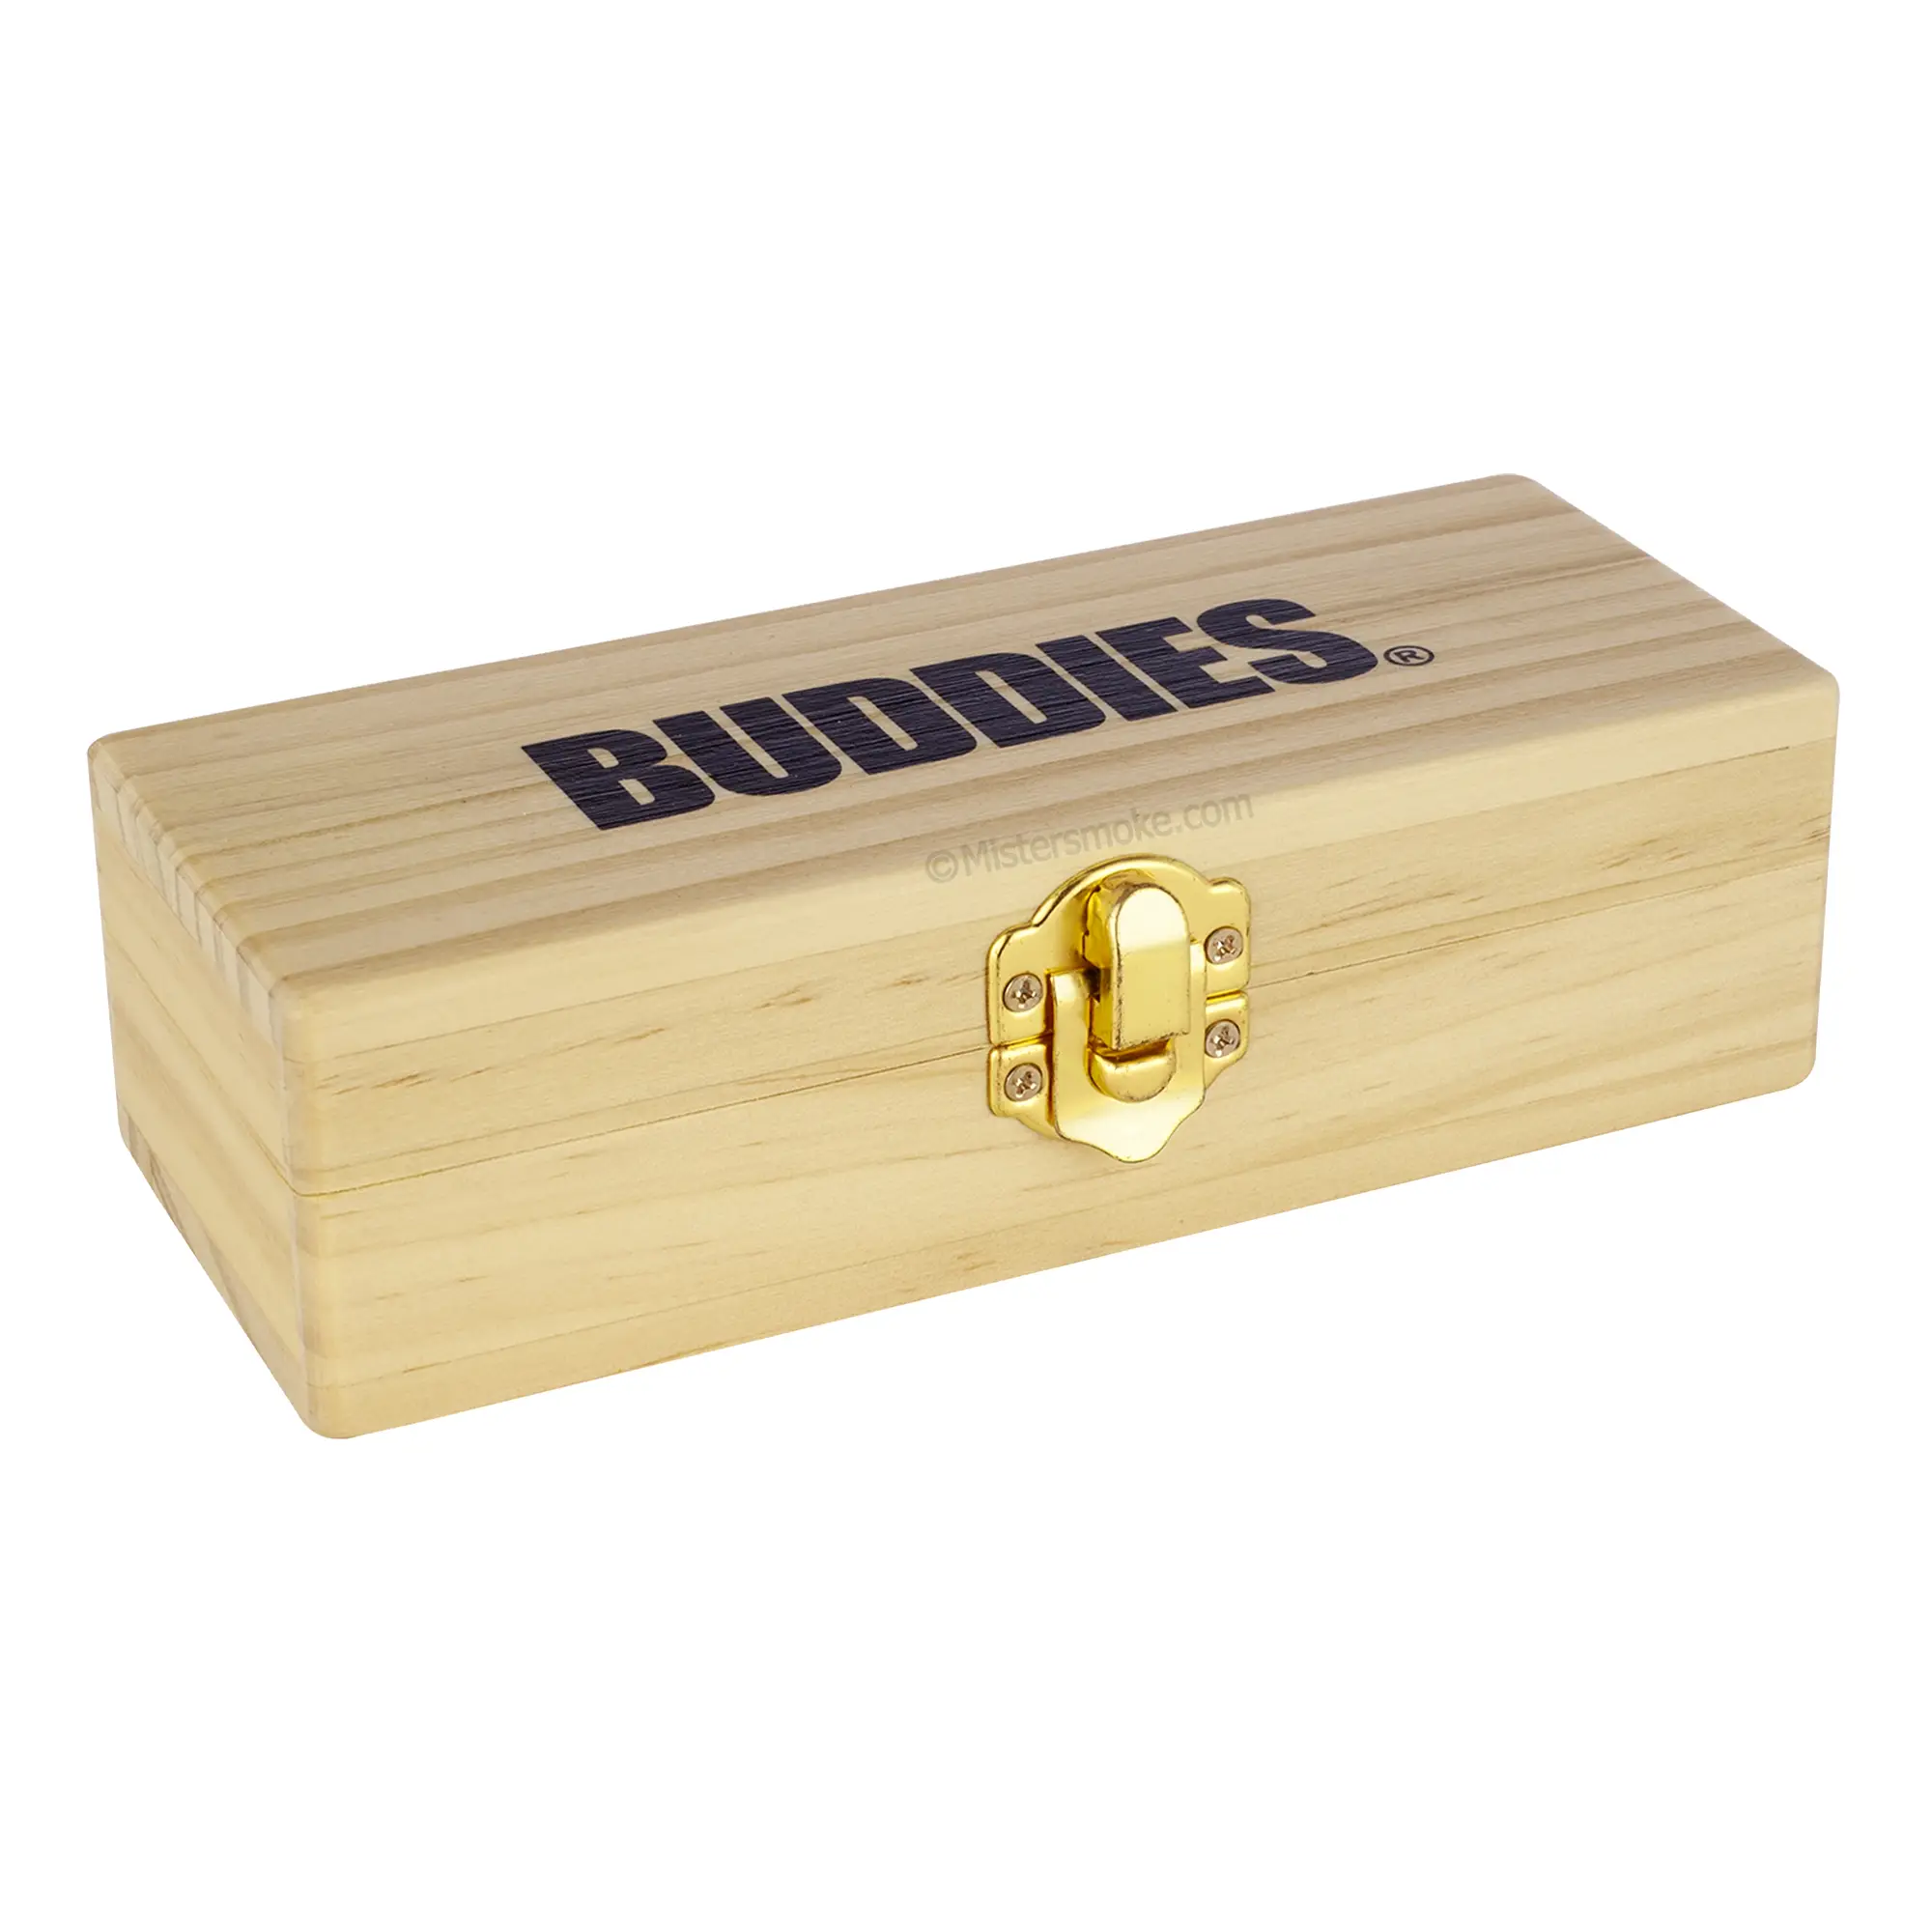 https://www.mistersmoke.com/wp-content/uploads/2022/10/8.6.5-boite-de-rangement-fumeur-buddies-Small-mini-boite-en-bois-pour-accessoires-fumeurs-copie.webp